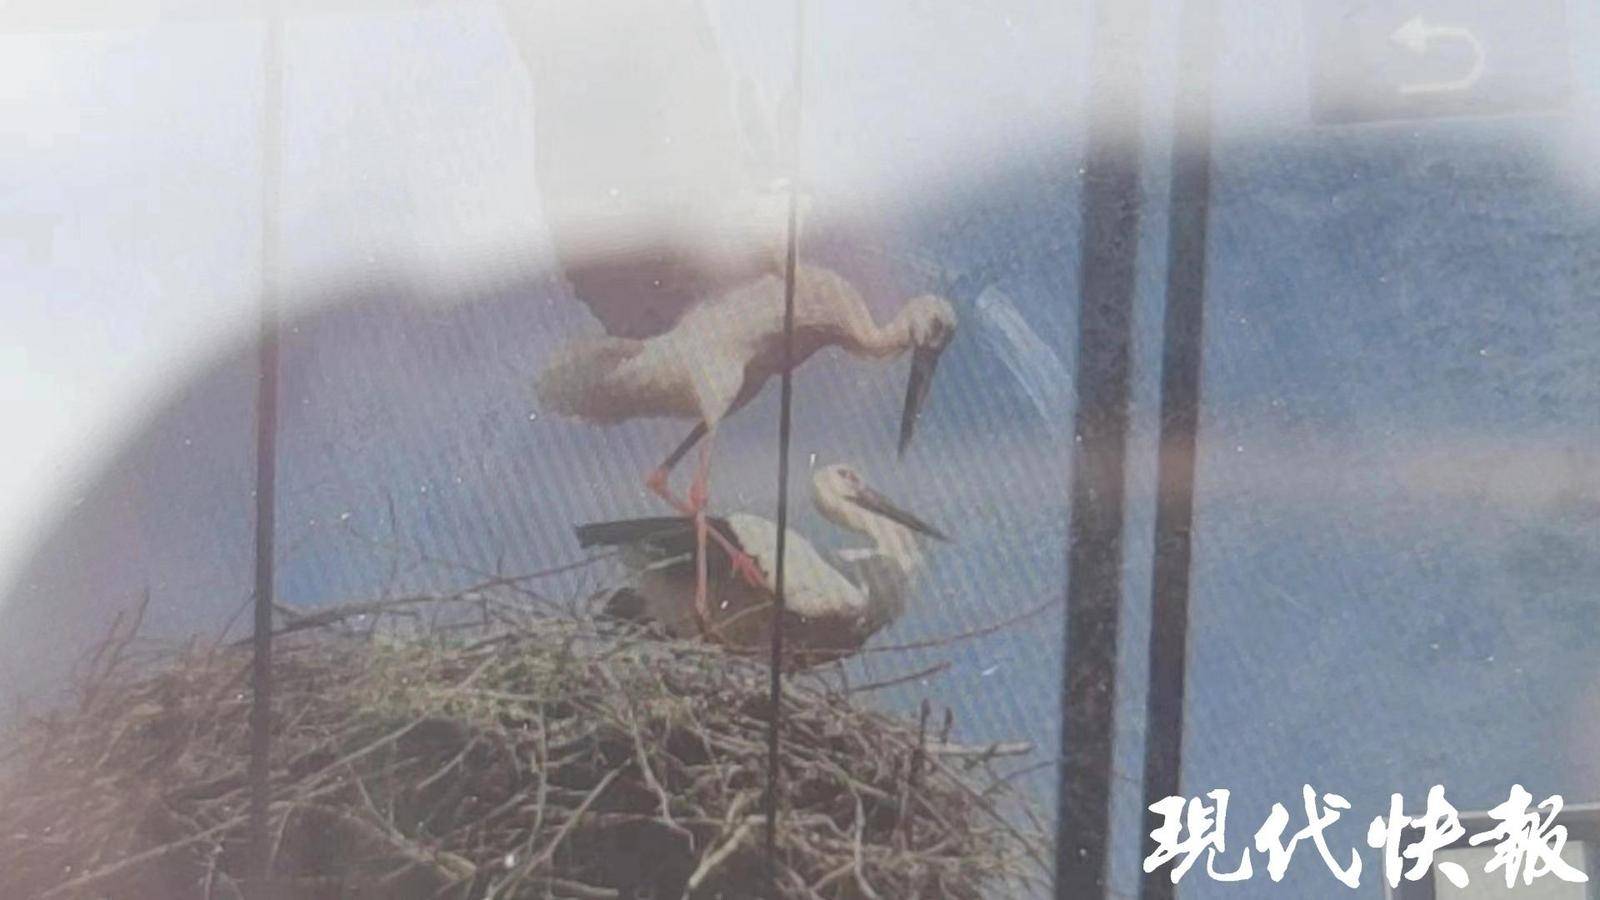 东方白鹳疑遭无人机绞断双腿后死亡 专家呼吁不要让观鸟变伤鸟